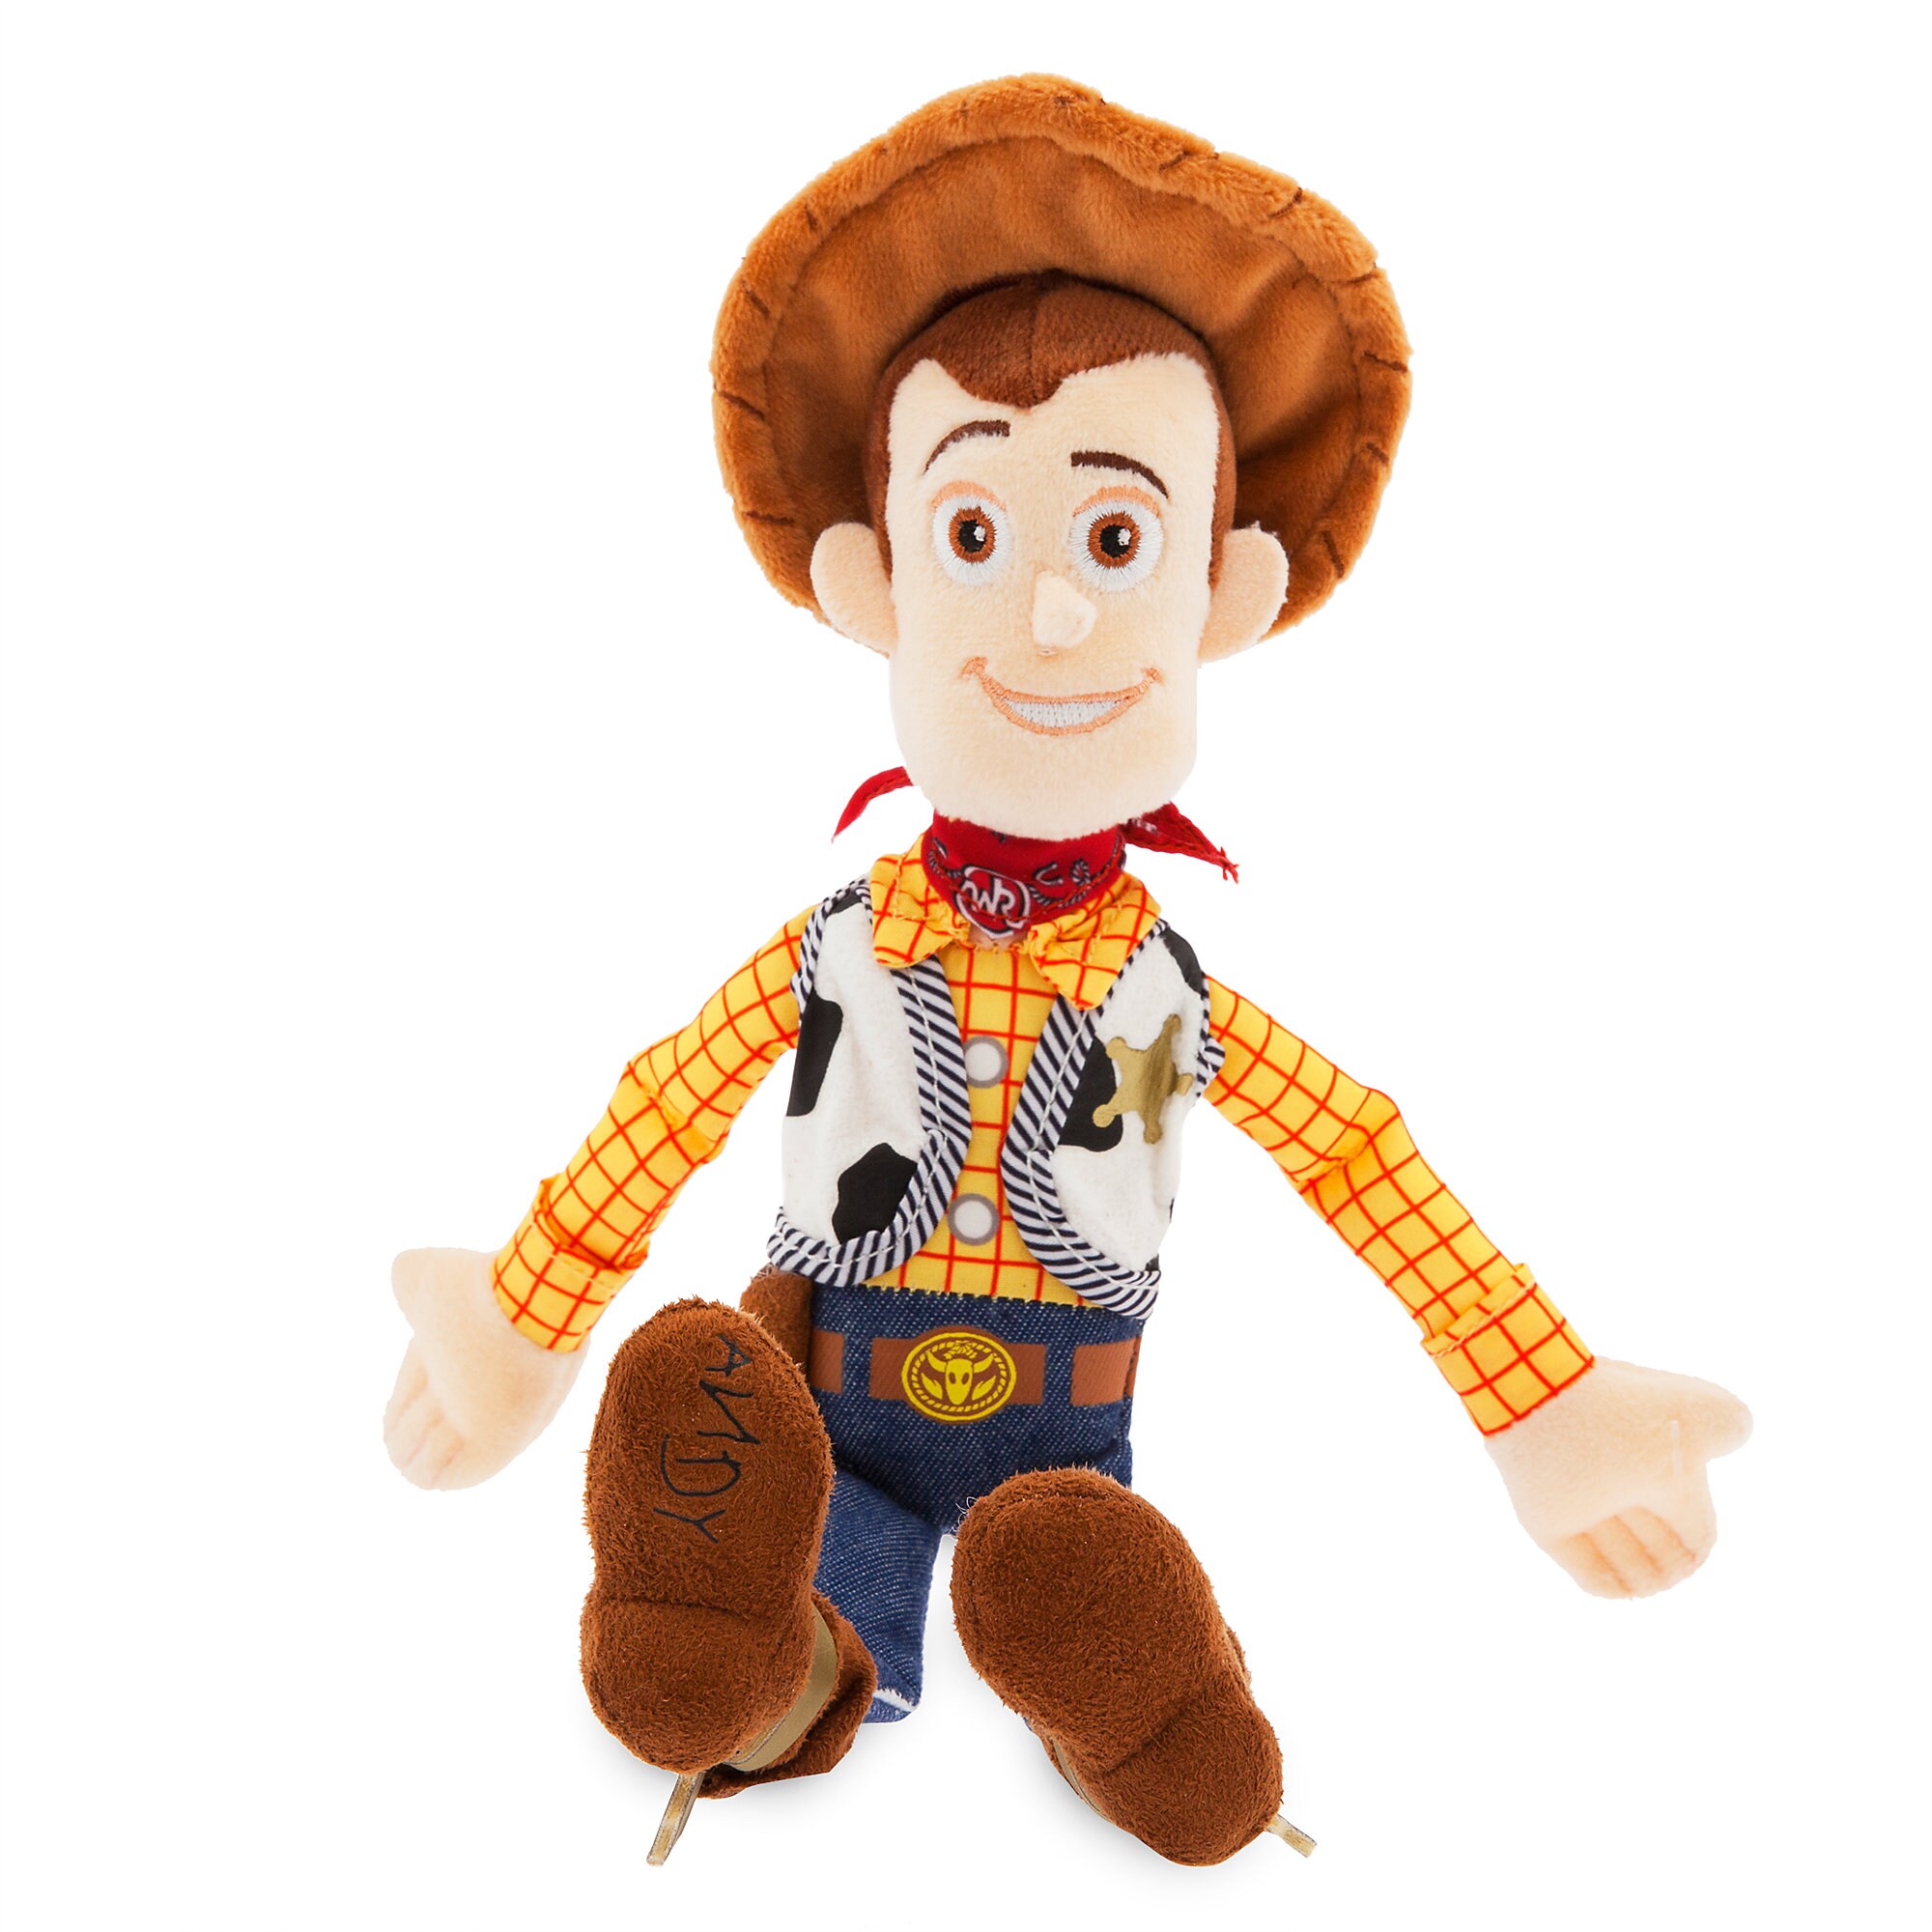 Woody toy story. Кукла Шериф Вуди. Вуди игрушка Дисней. Вуди Шериф ковбой кукла. Шериф Вуди игрушка в Toy story 4.